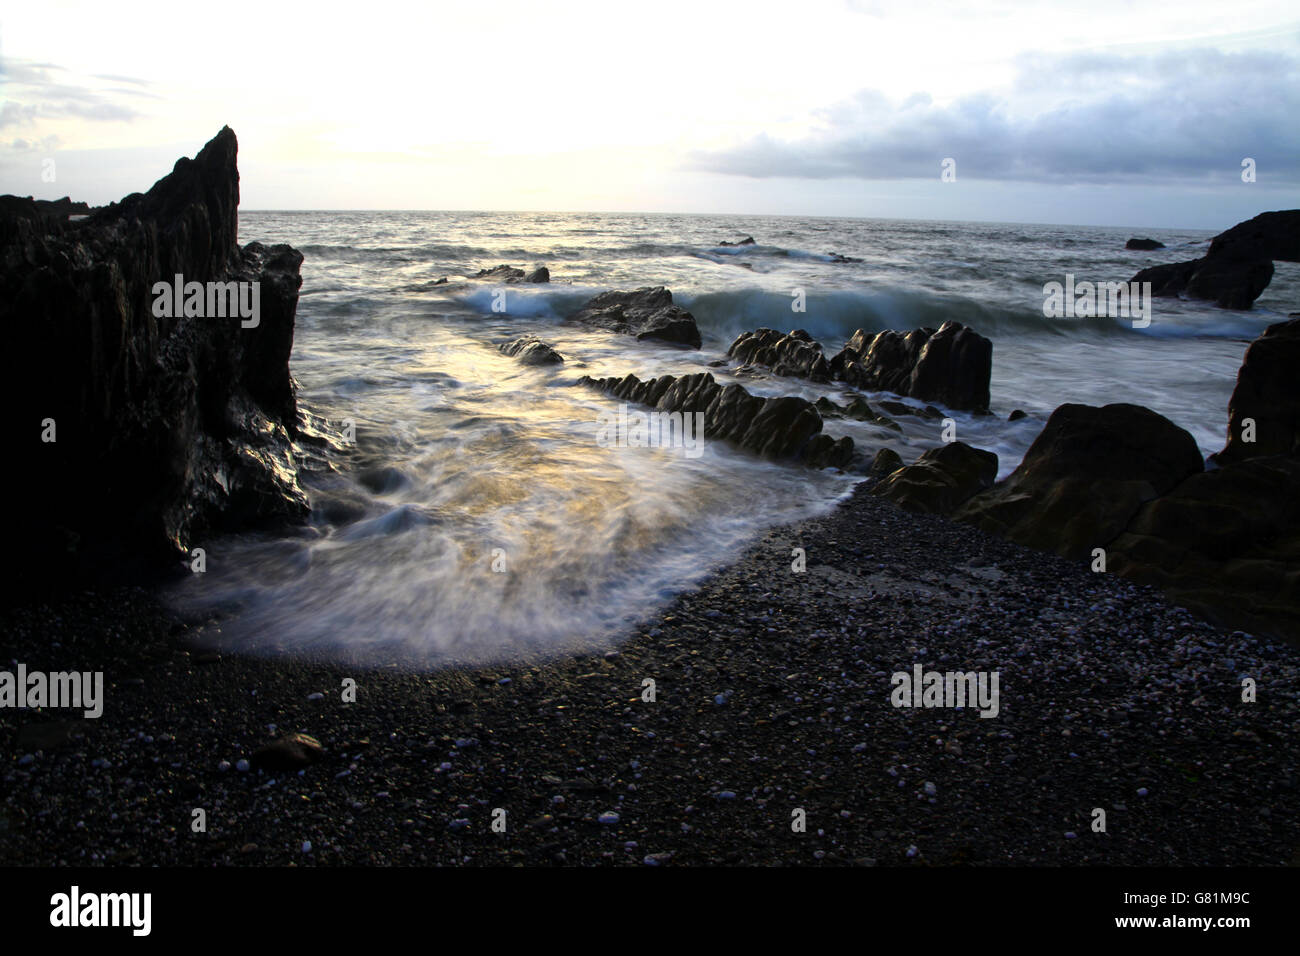 Siluetas de piedras irregulares en una orilla infiltrado con una espuma de mar como olas curl en la playa Foto de stock